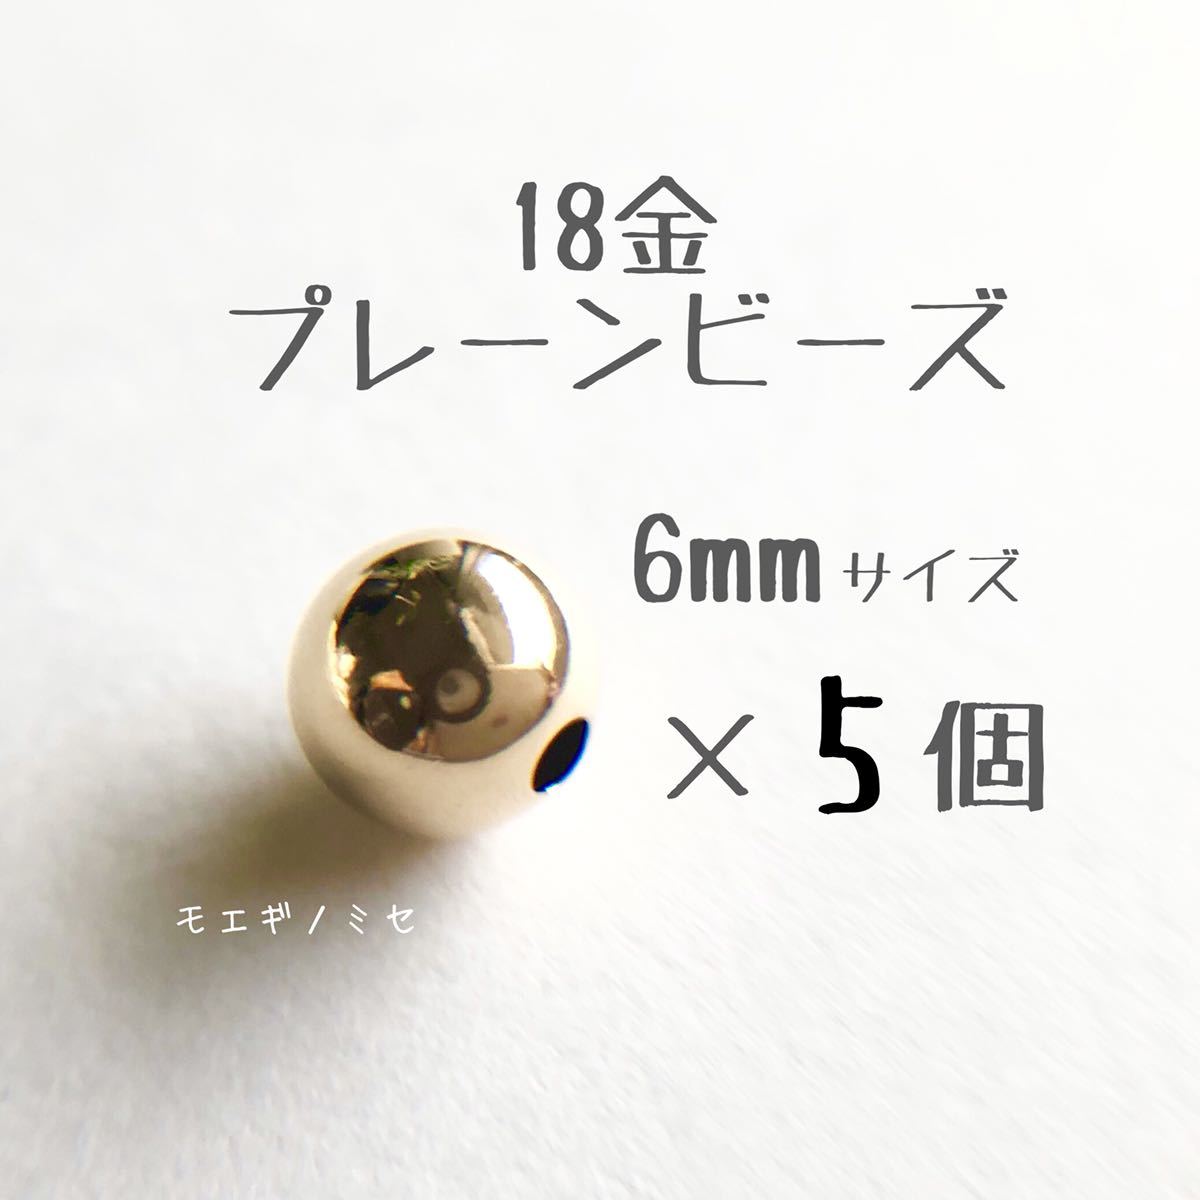 18金 プレーンビーズ6mm 5個セット 日本製 k18 アクセサリーパーツ 18k 素材 シンプル丸ビーズ ハンドメイド 金属パーツ 